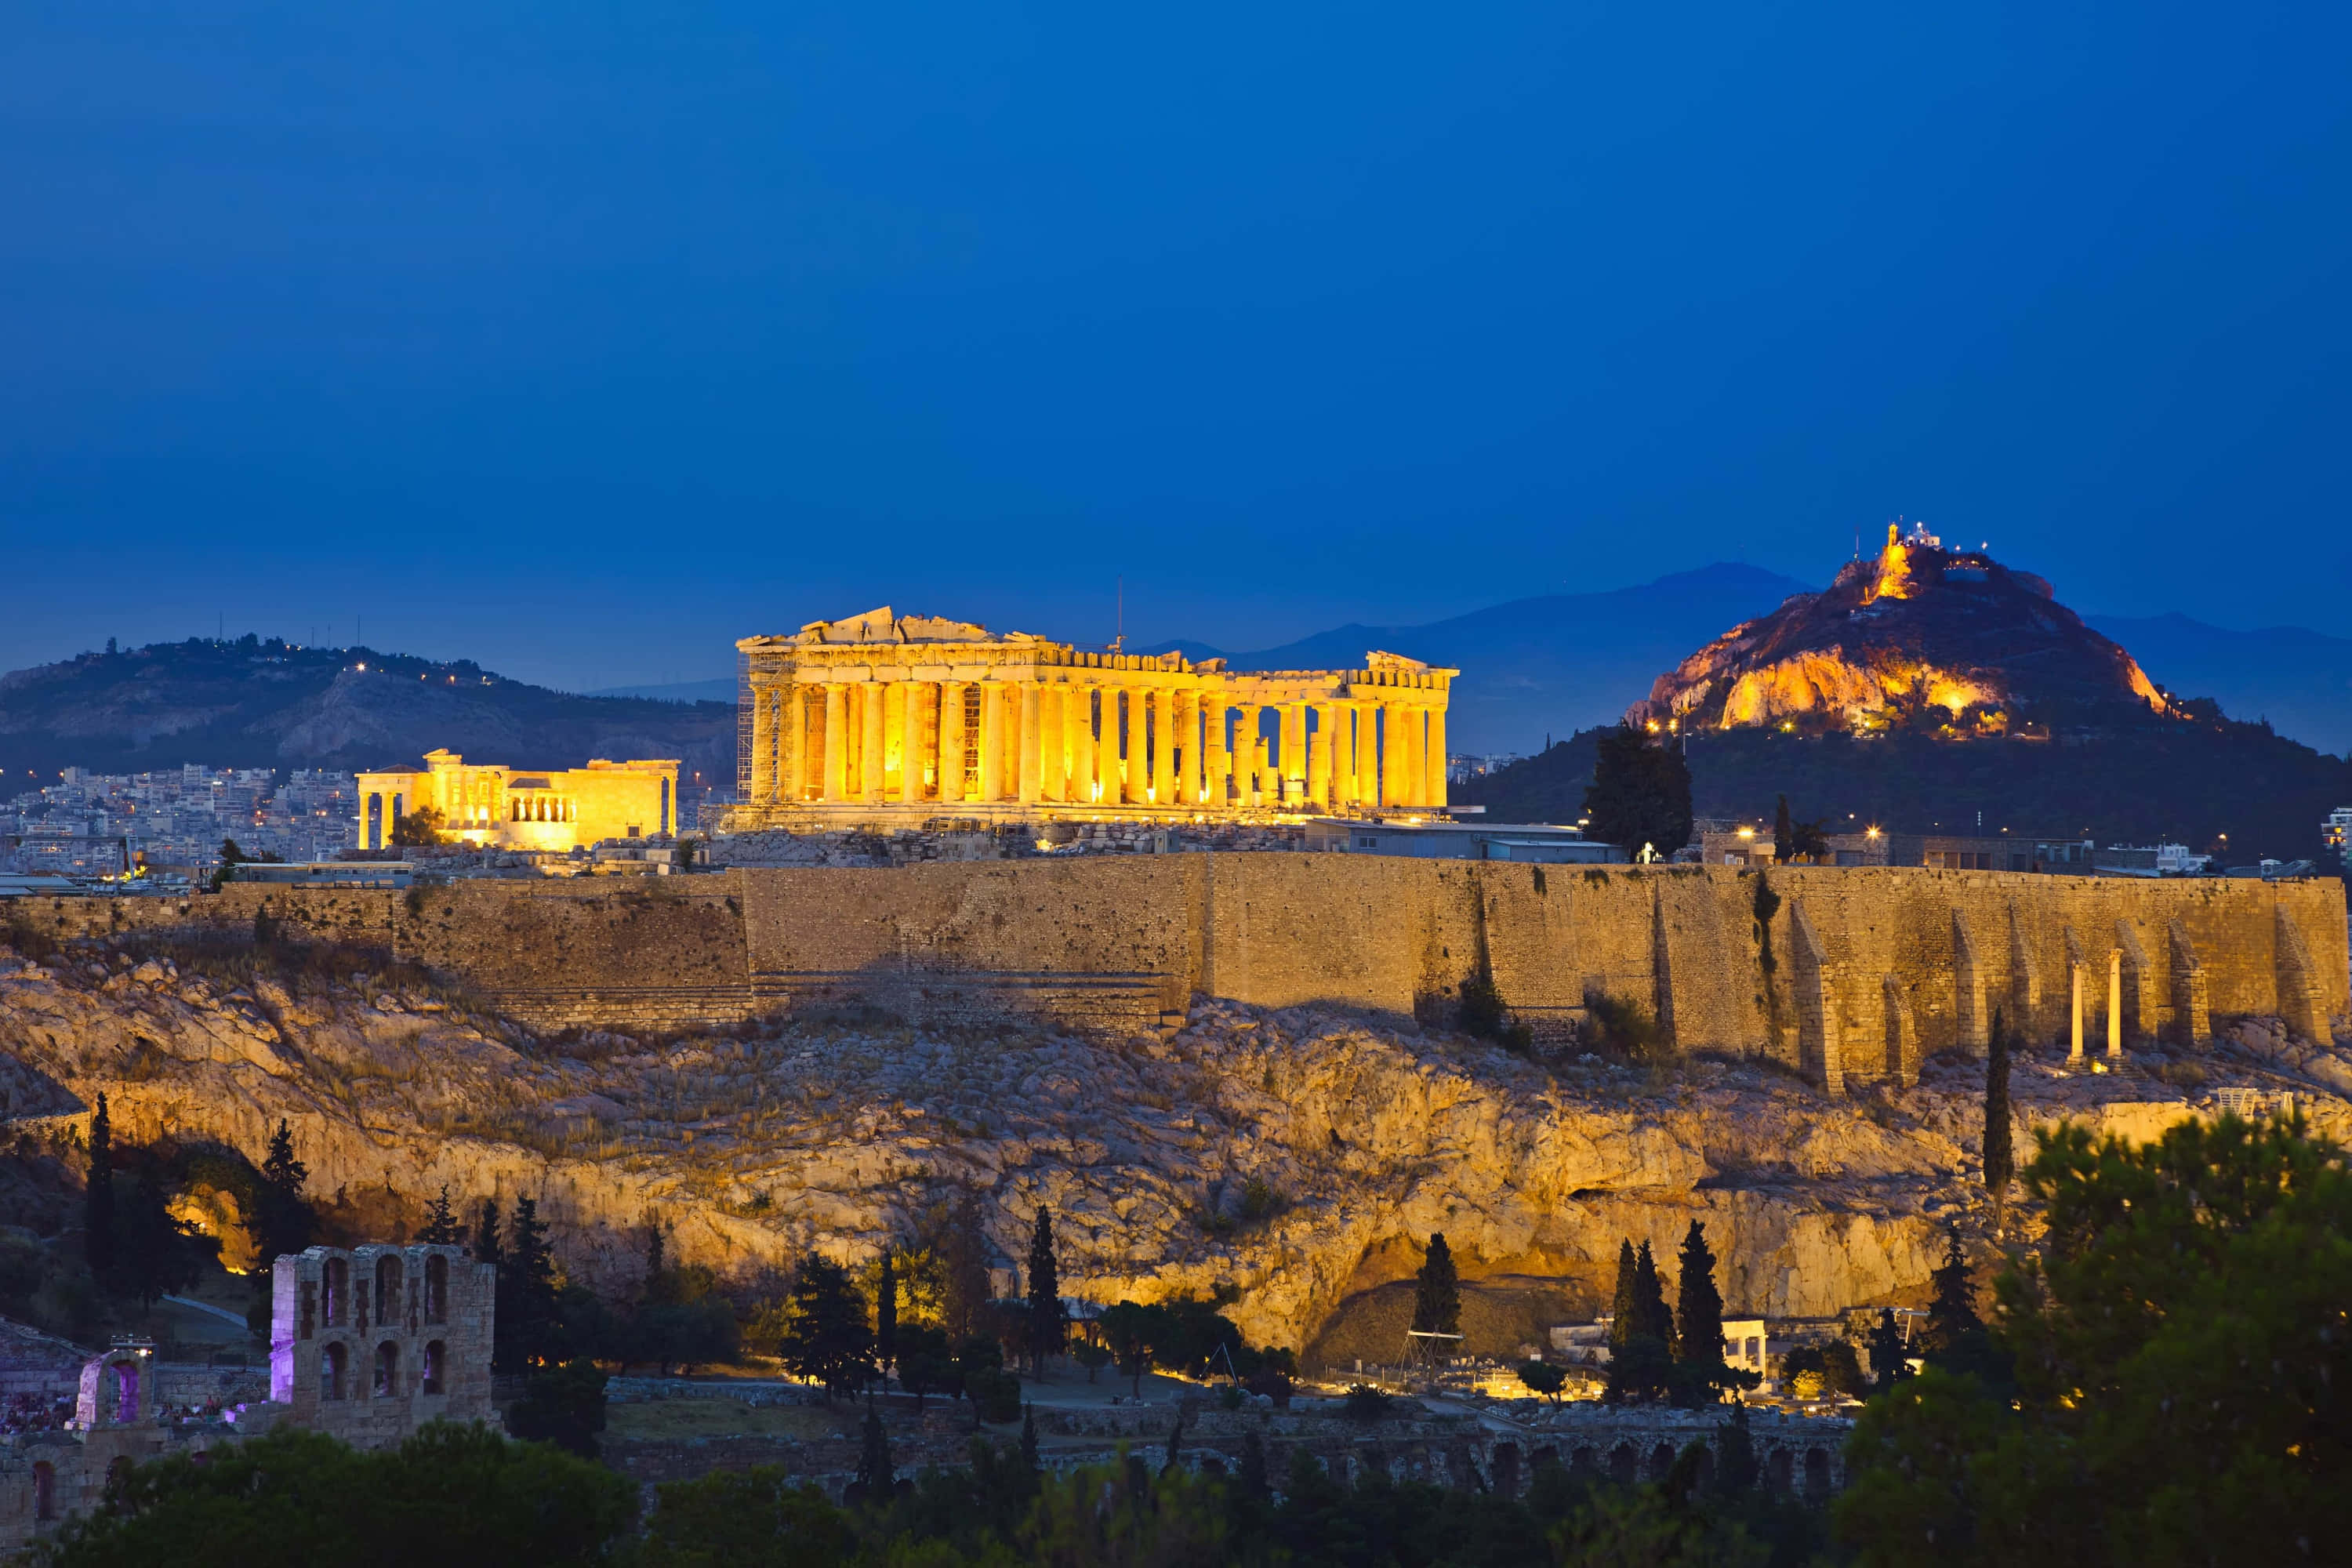 Colorful sunset lights up the Greek landscape